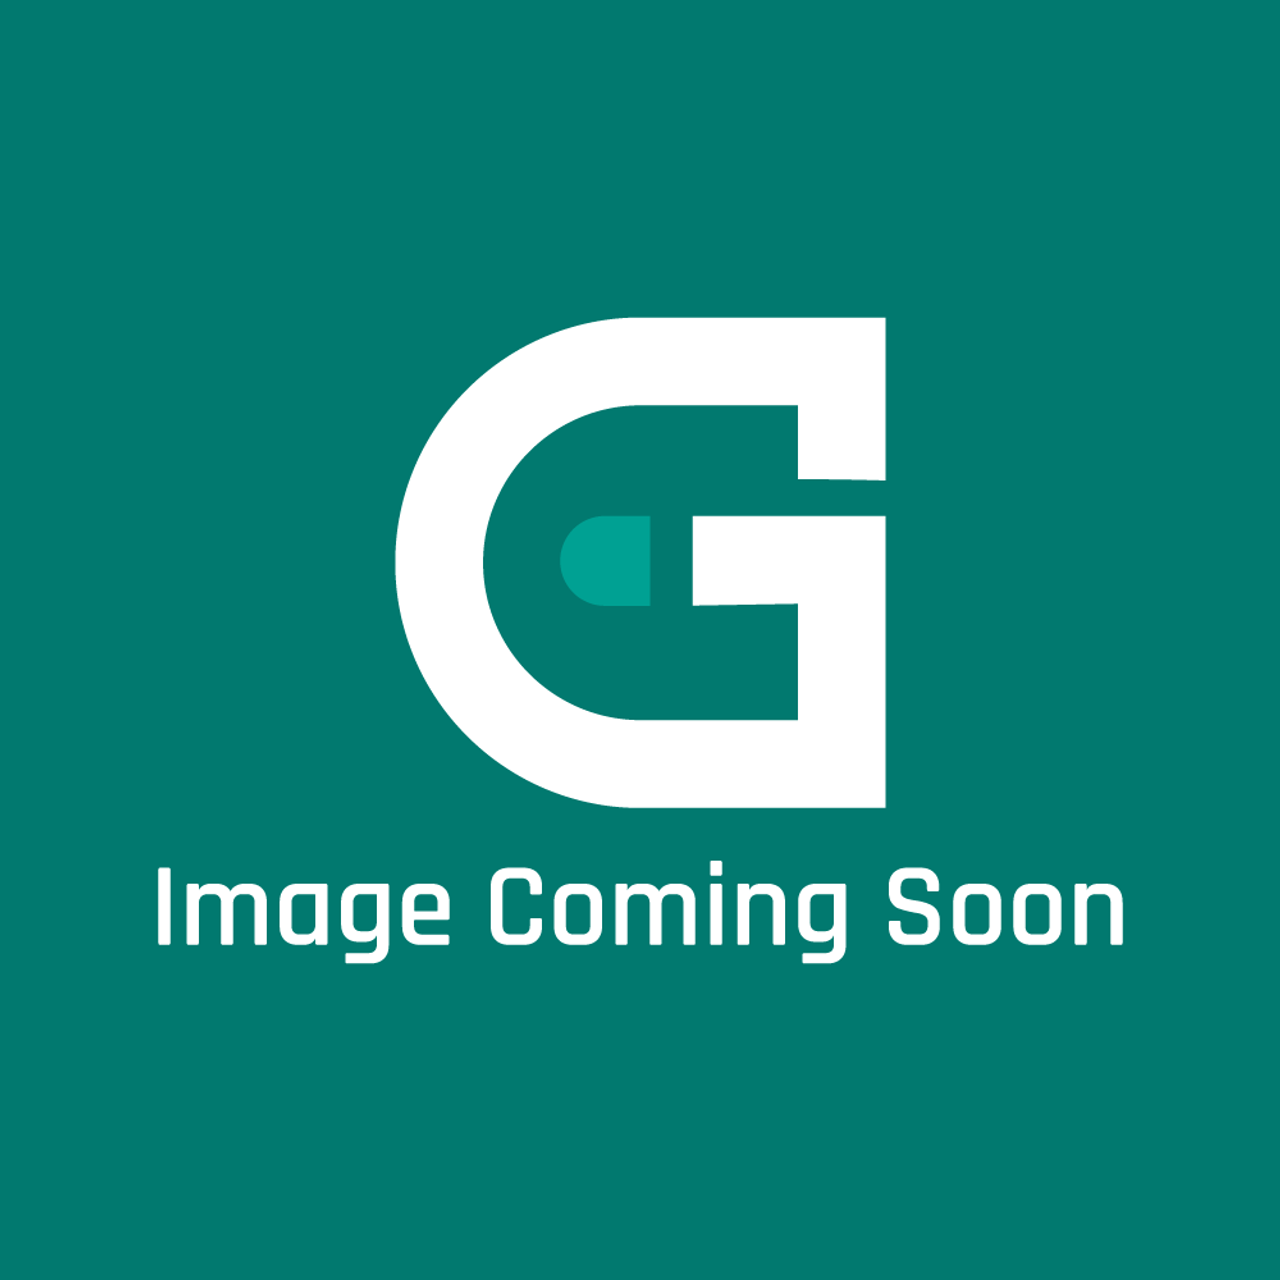 Garland 1831101 - Grease Pan Front - Image Coming Soon!